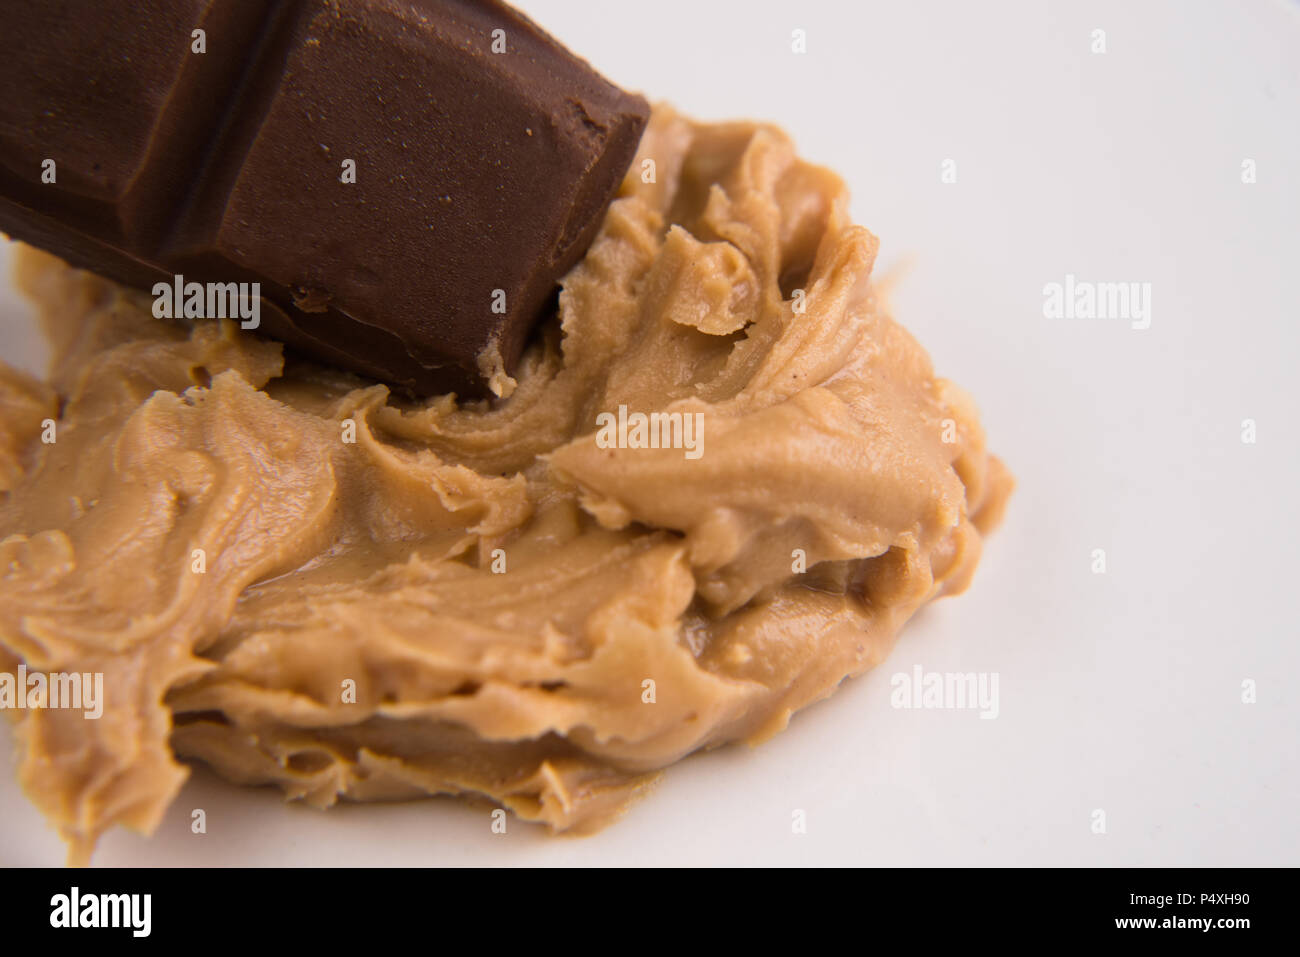 Primo piano di un burro di arachidi e barra di cioccolato su sfondo bianco Foto Stock